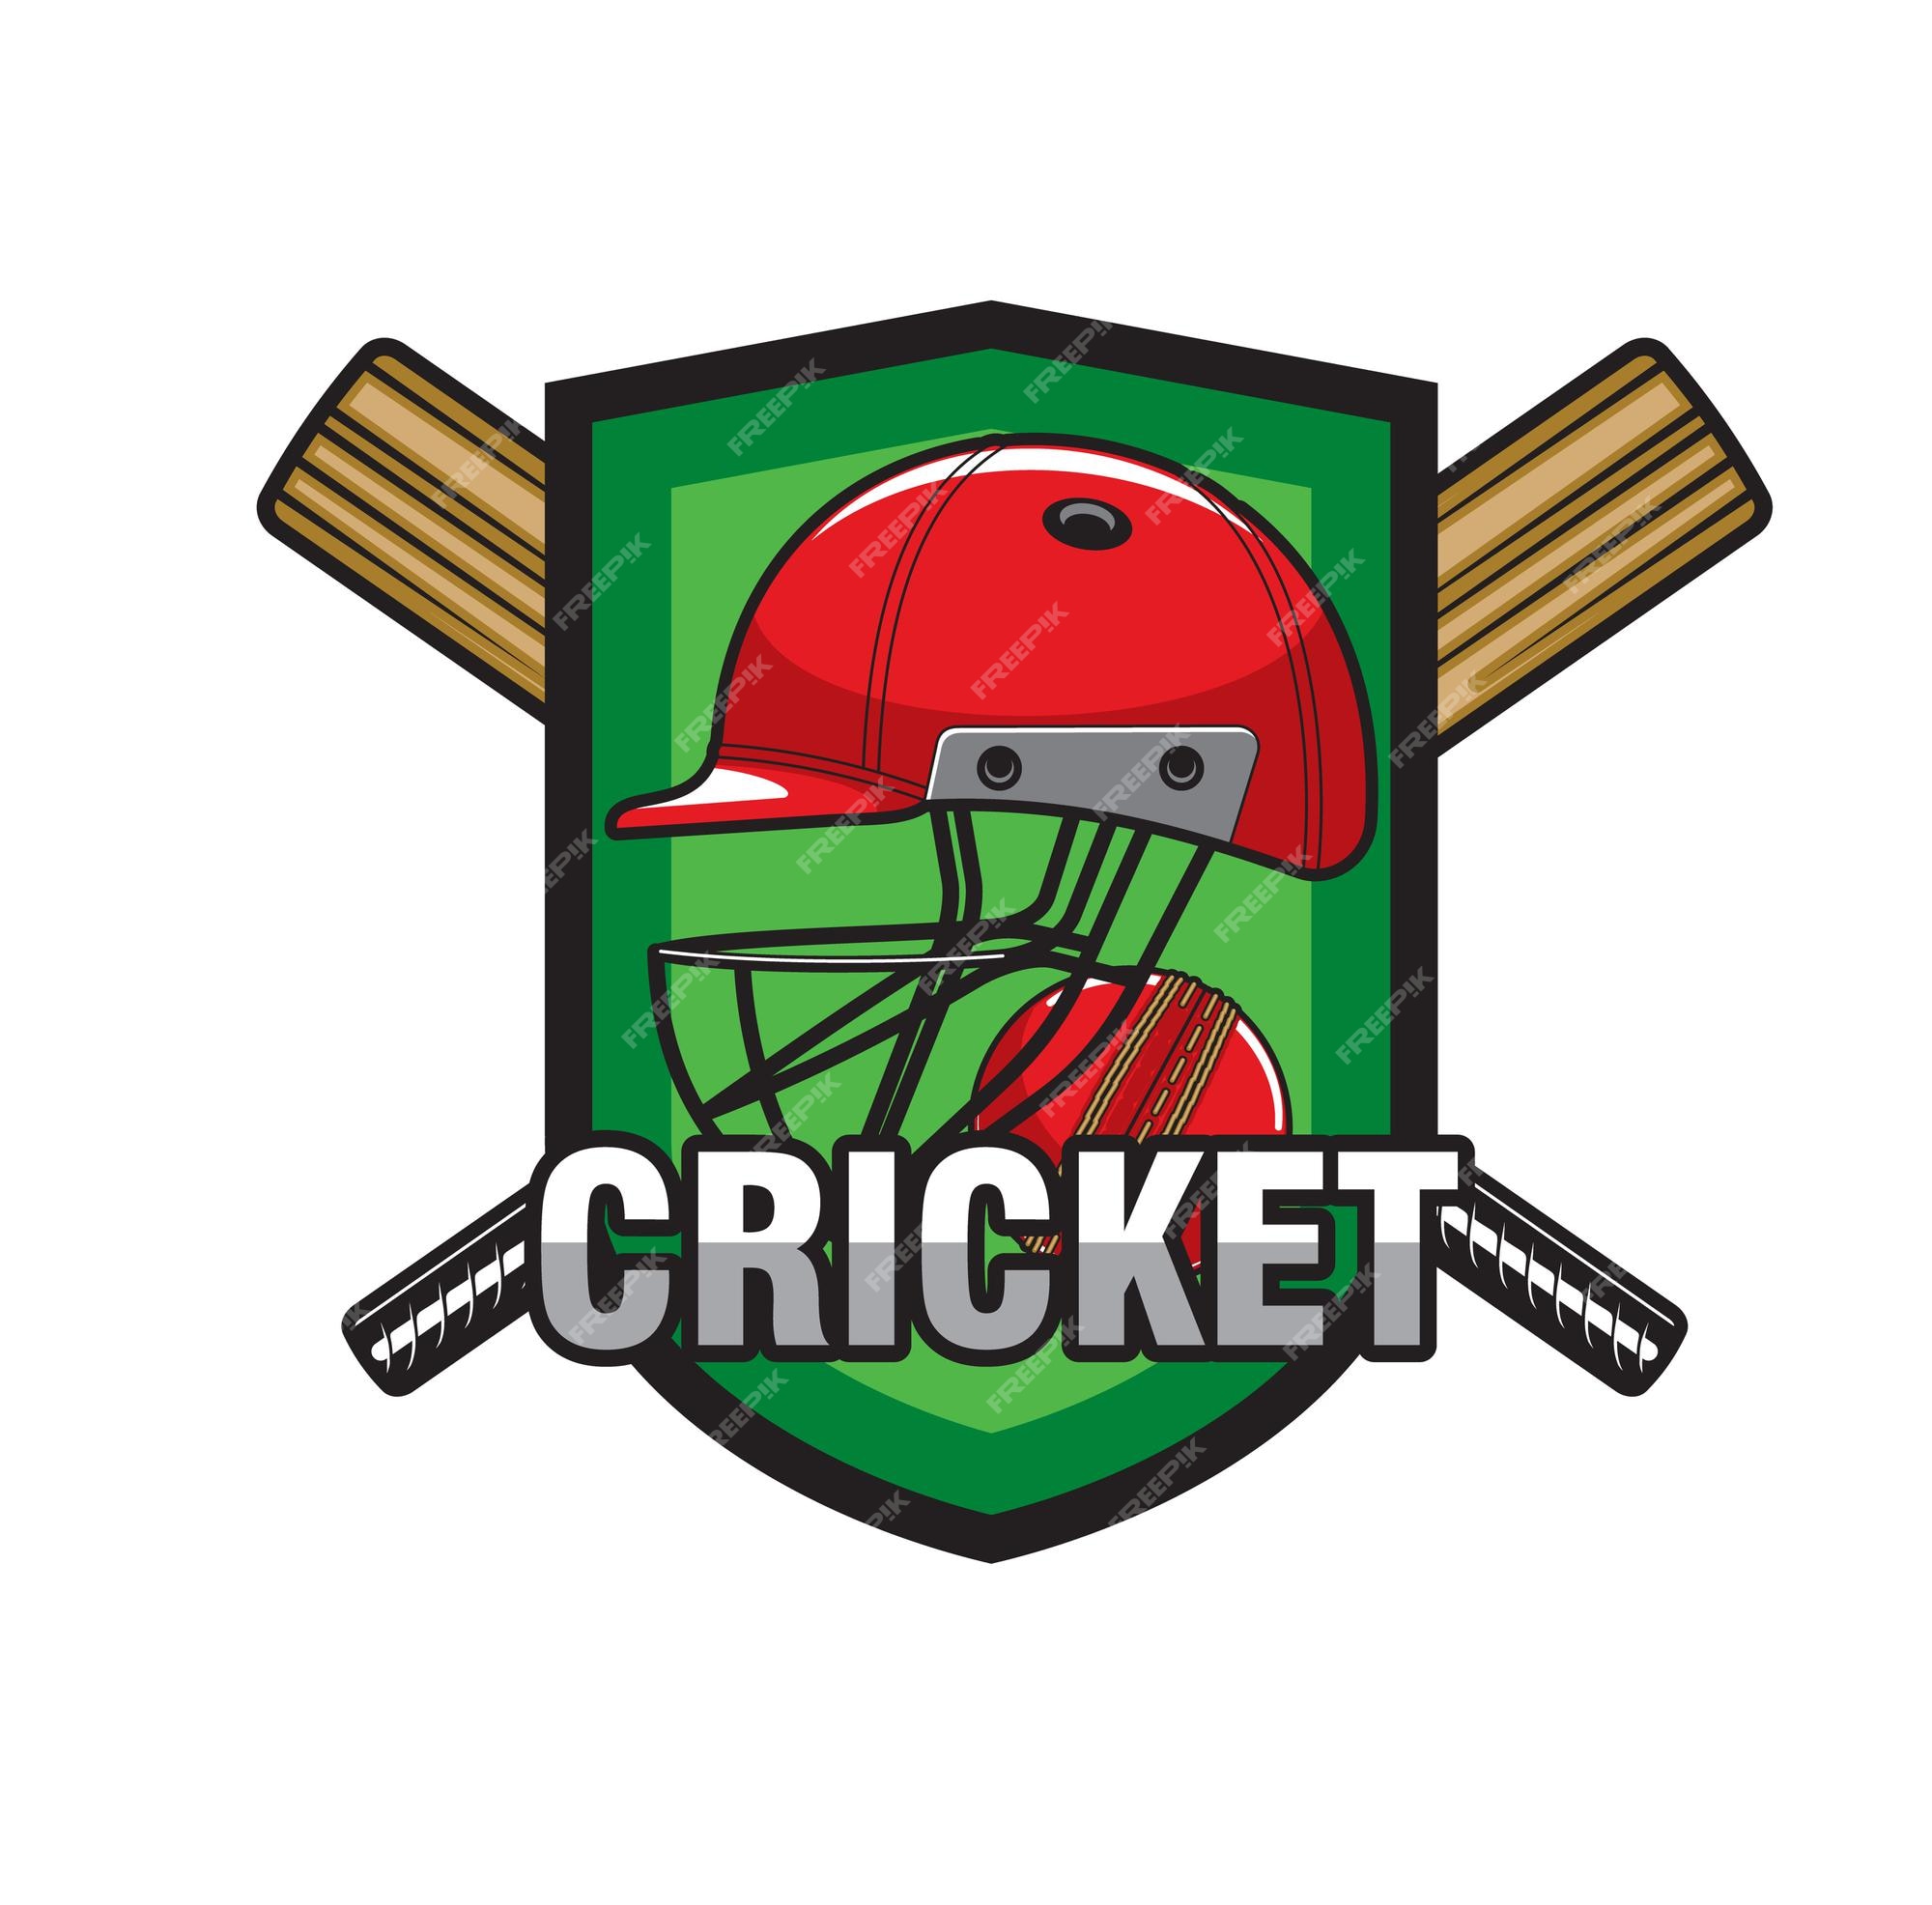 Cartaz do campeonato de críquete ao vivo com a copa do troféu de ouro, taco  realista, bola, wicket e capacetes da equipe participante a e b no fundo do  estádio roxo.